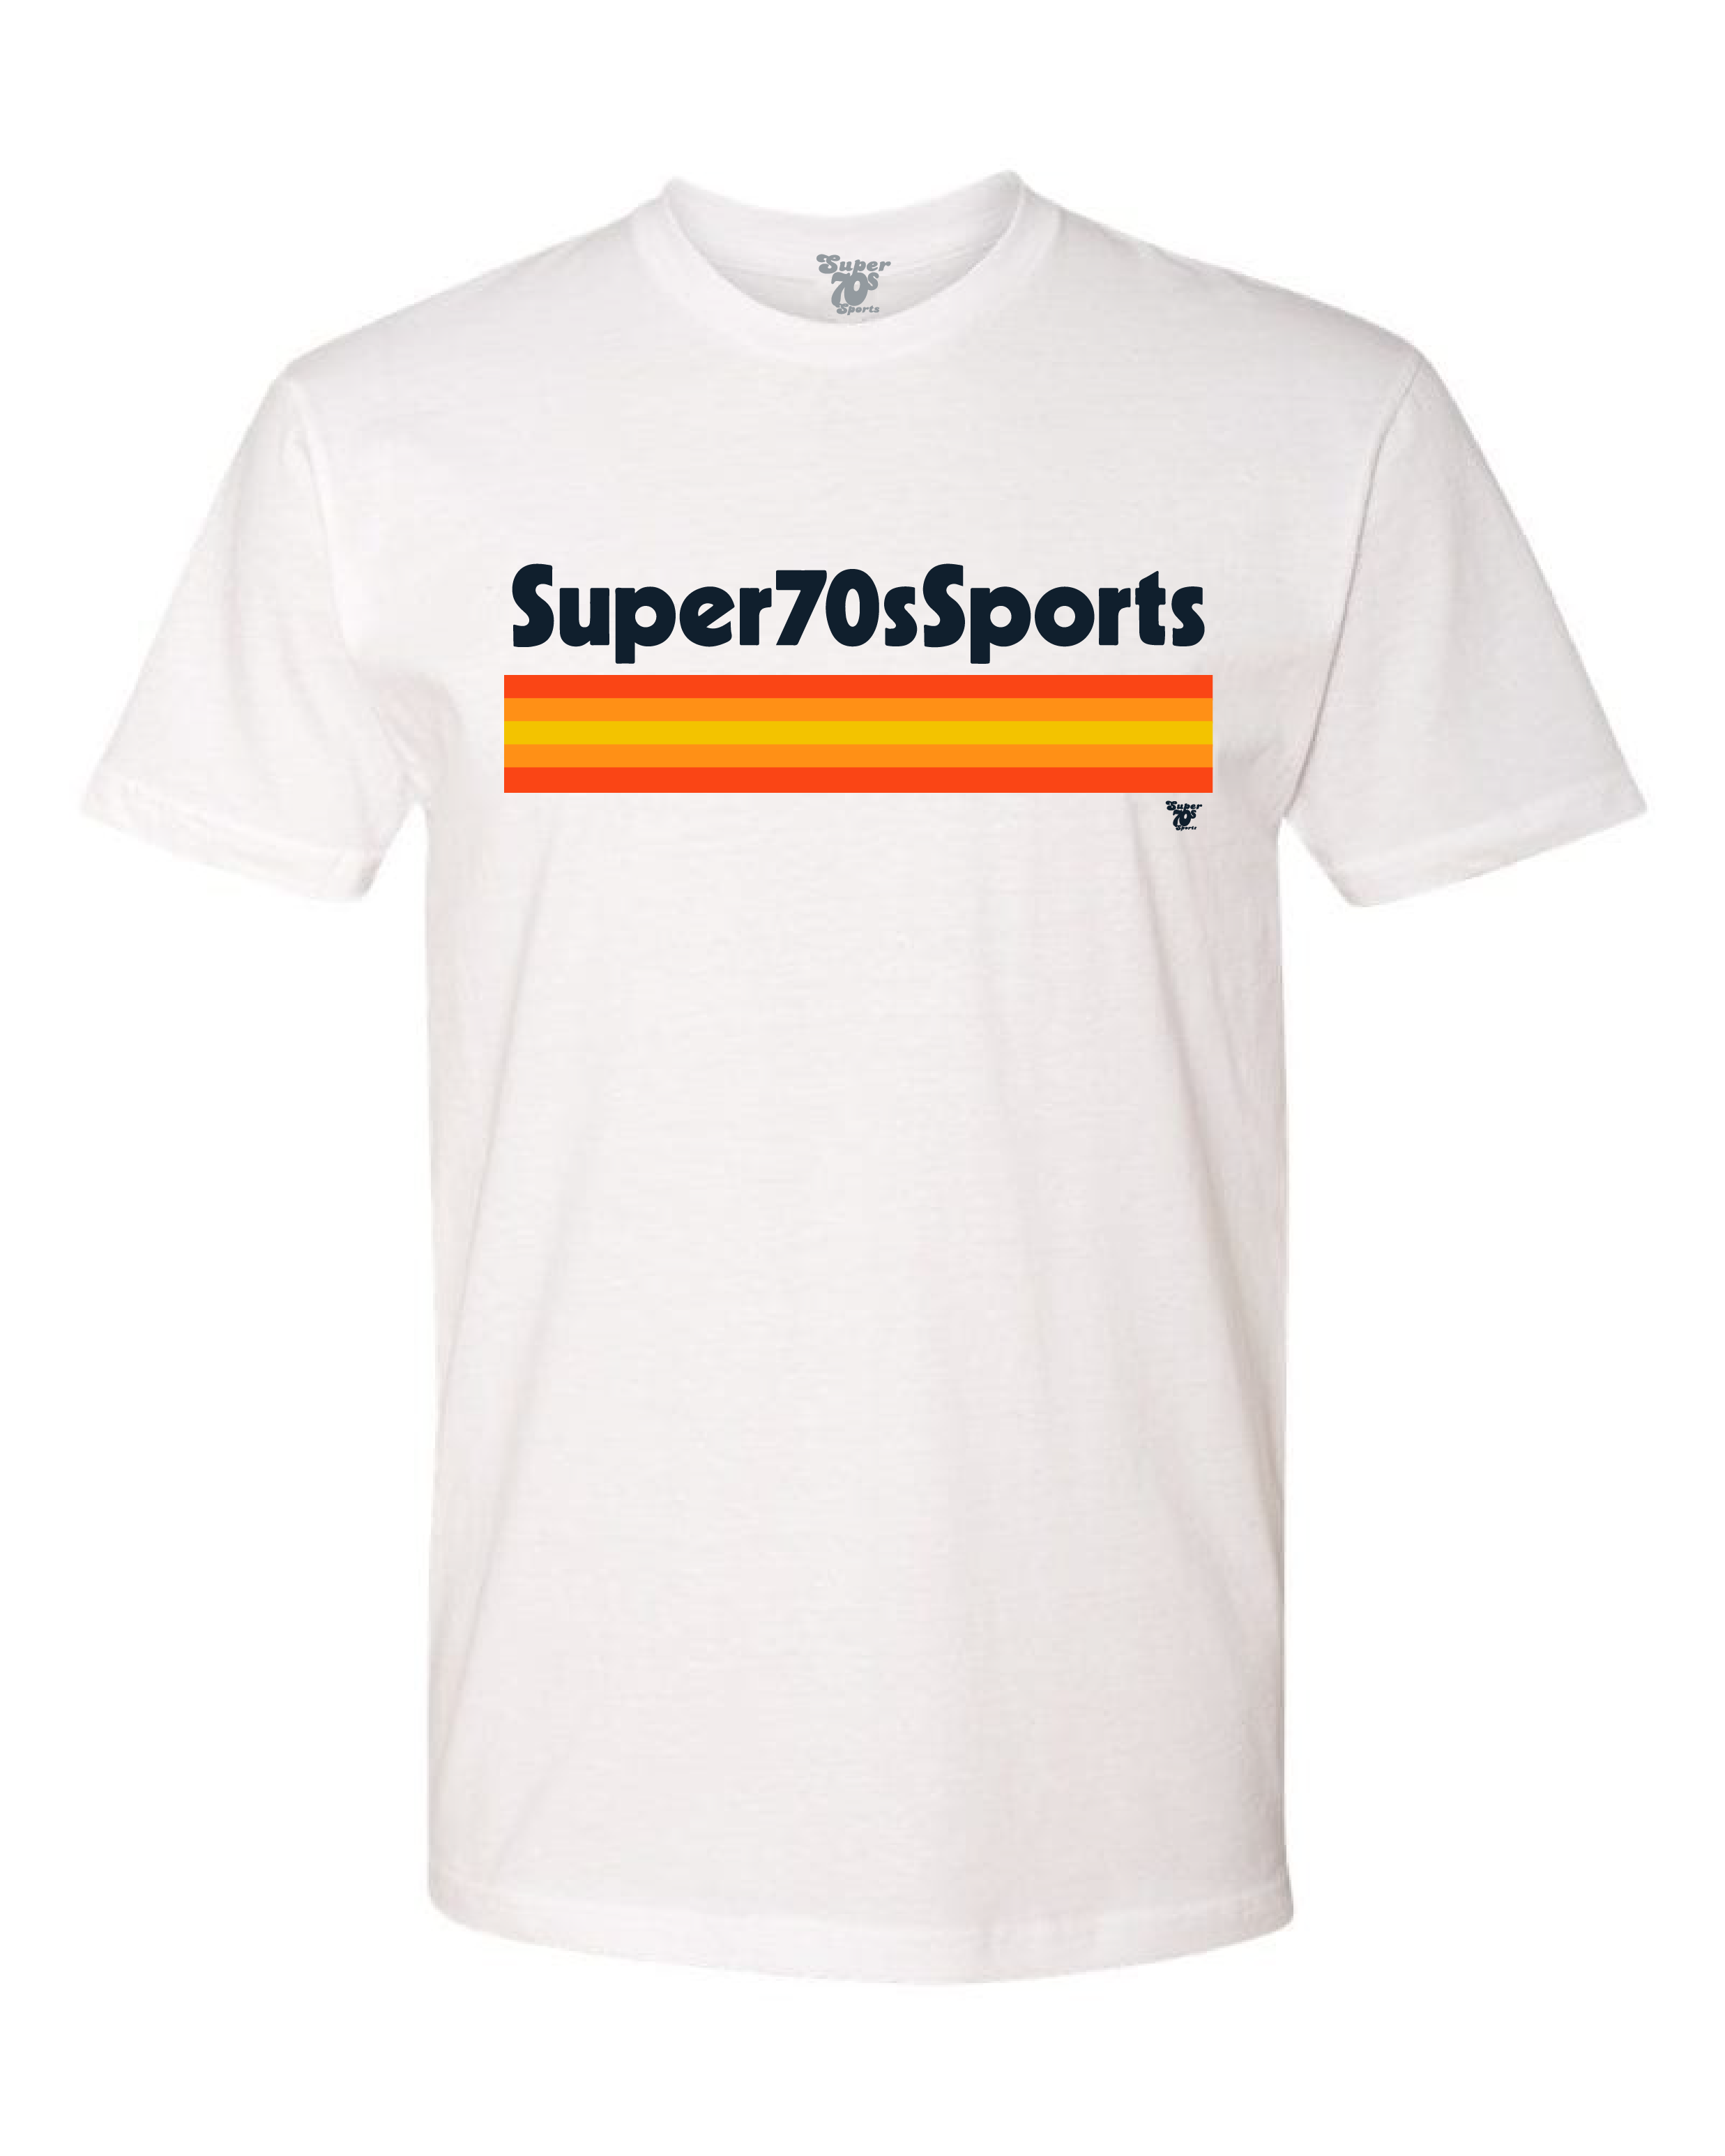 Super 70s Sports (@Super70sSports), Twitter